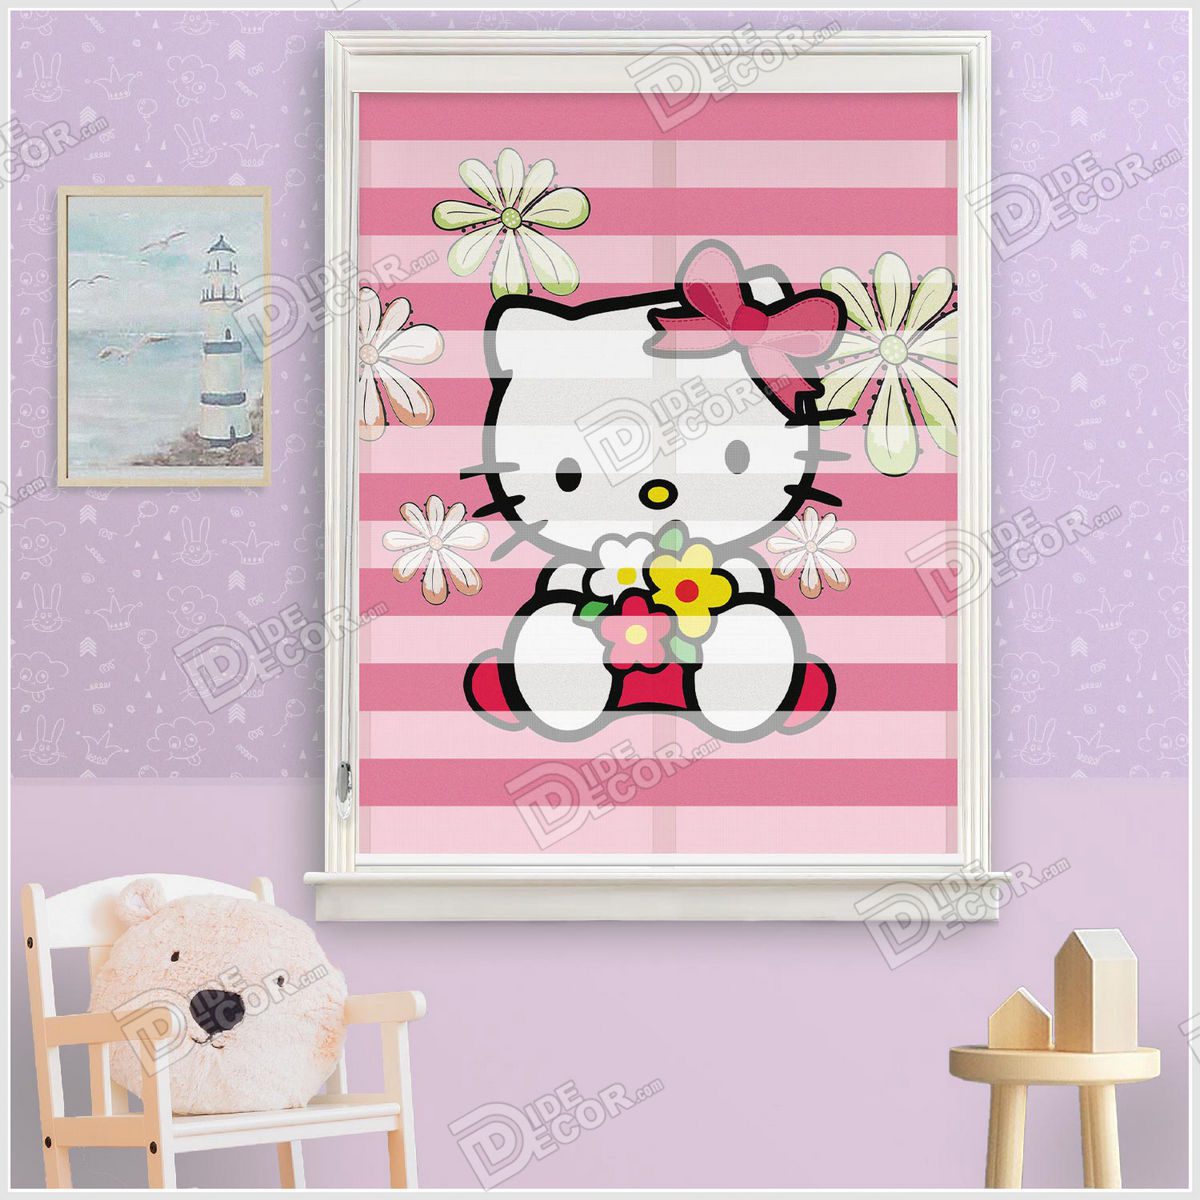 پرده زبرا کودک چاپی کد ZKP-28 دخترانه با تصویر شخصیت کارتونی گربه هلو کیتی Hello Kitty با گل های زرد و قرمز و زمینه عکس صورتی رنگ